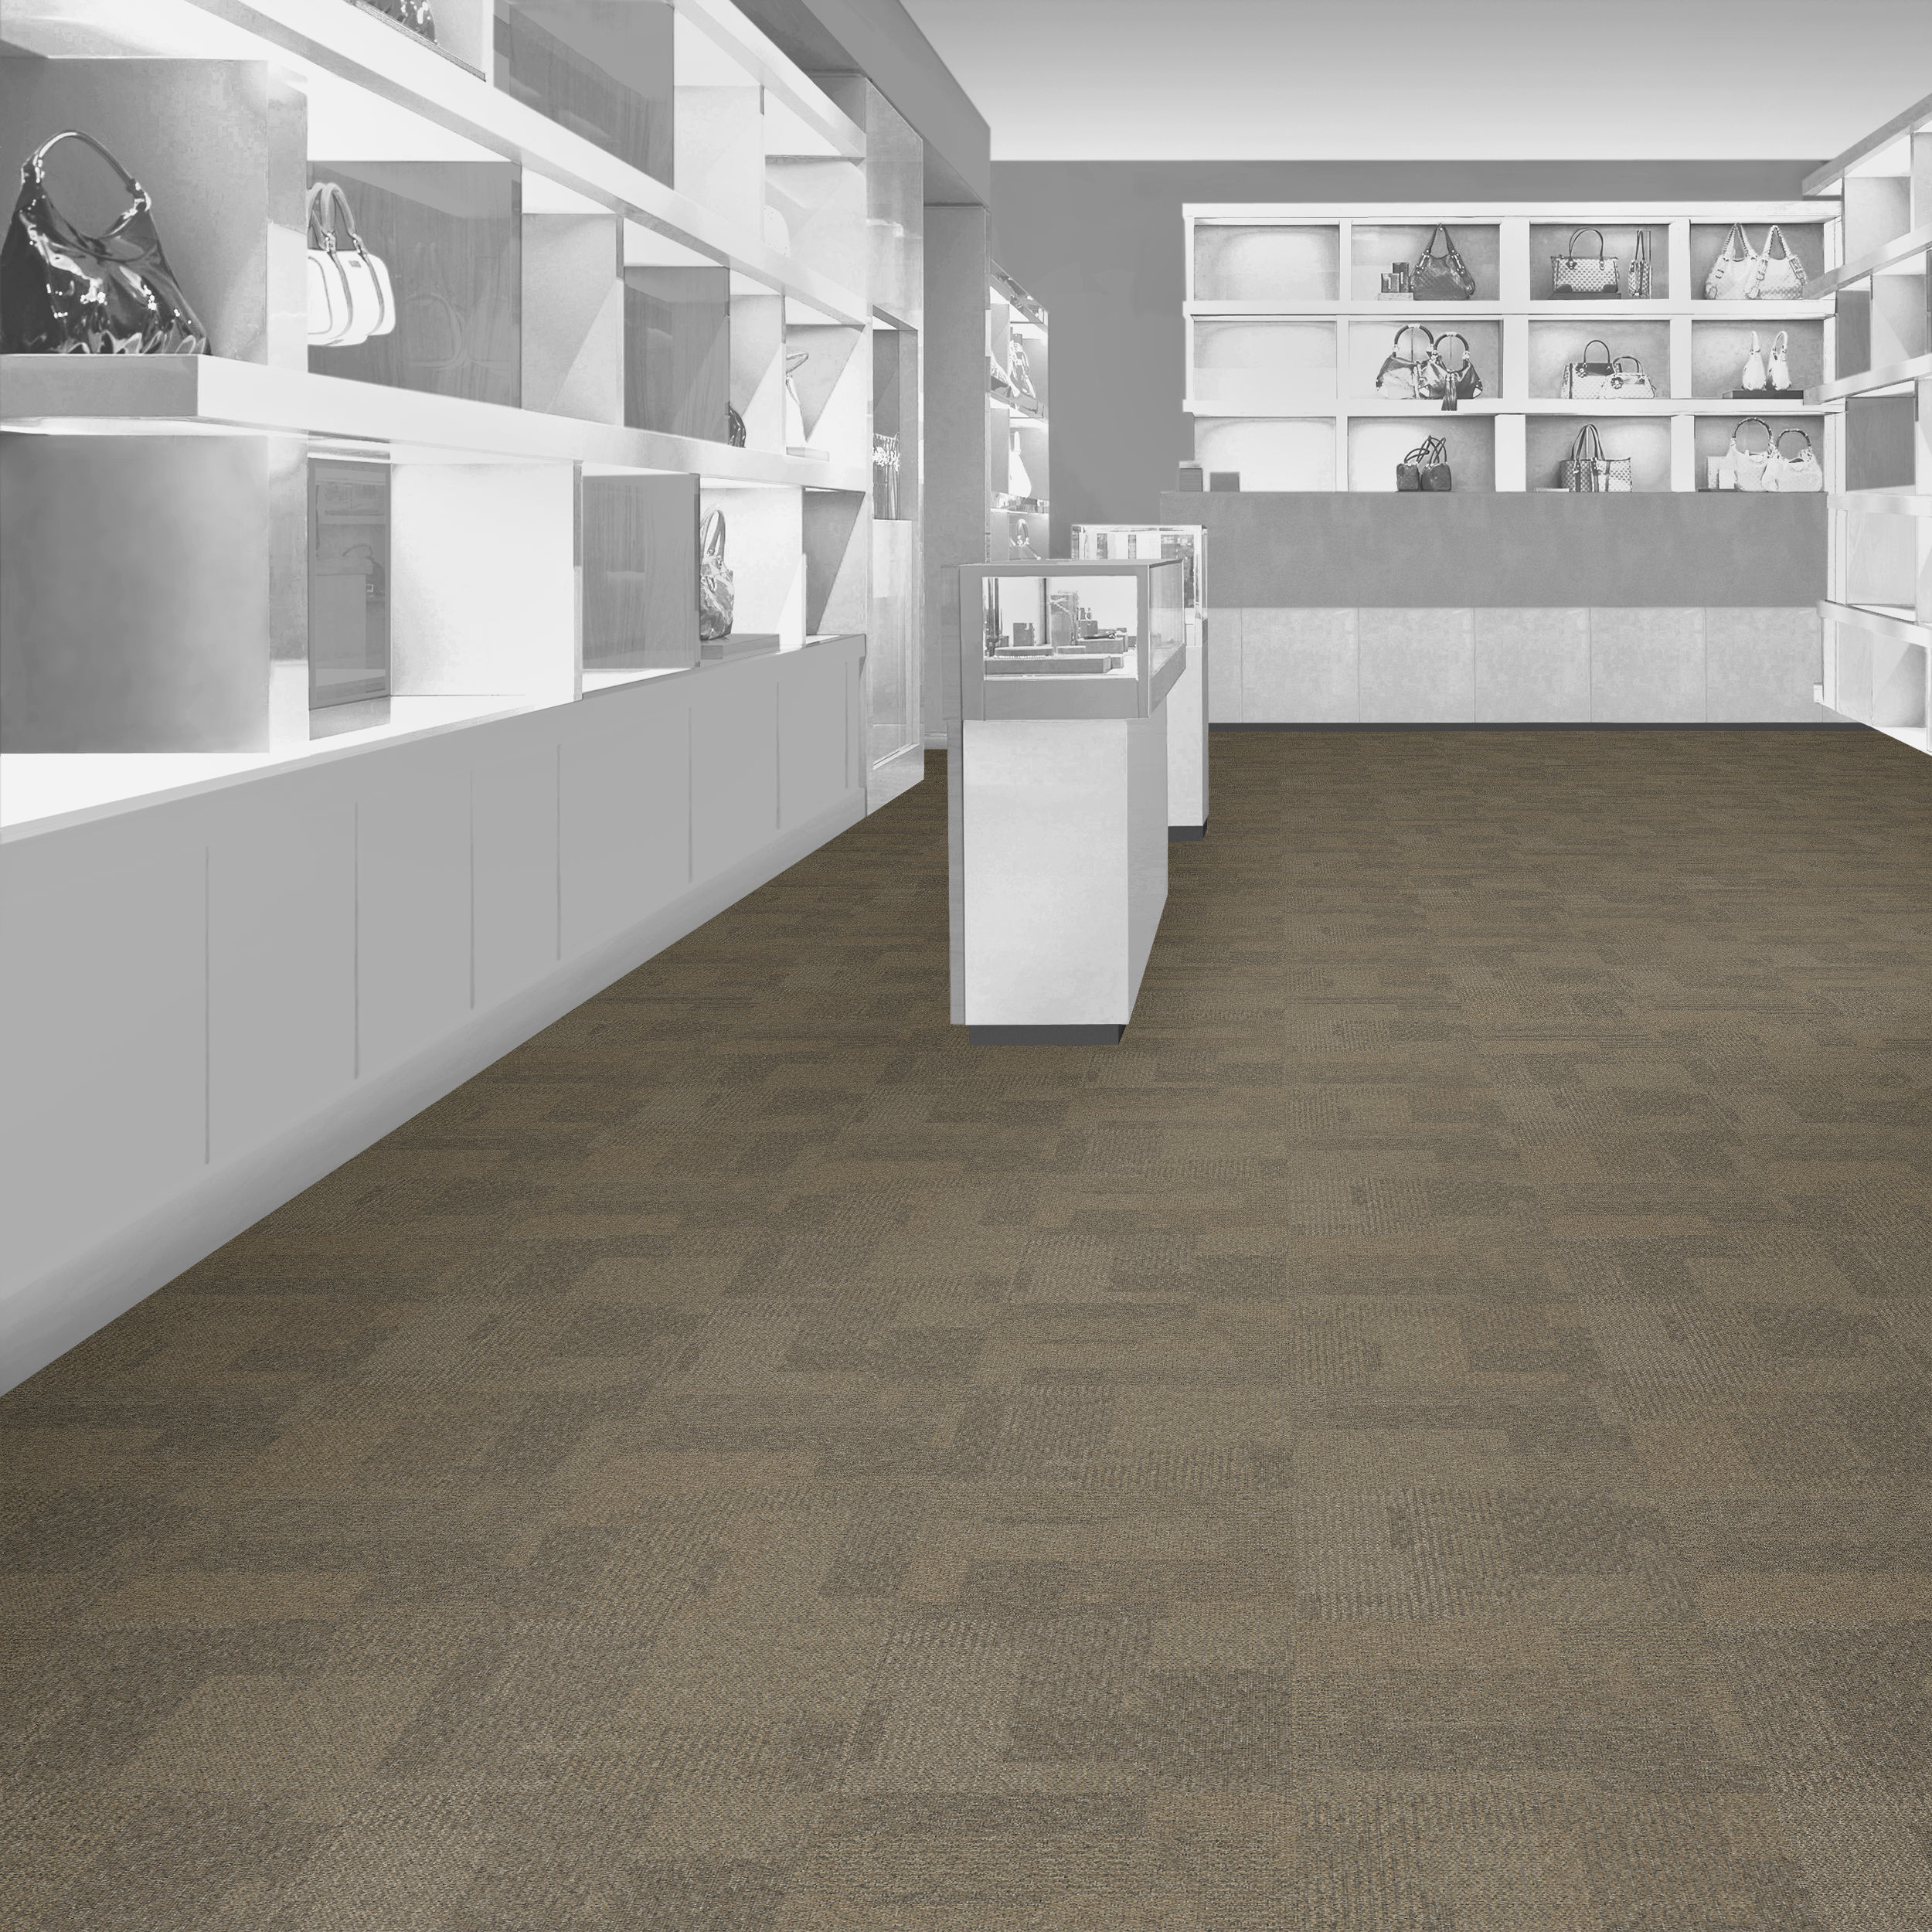 Desert Transformation Carpet Tile in commercial store.